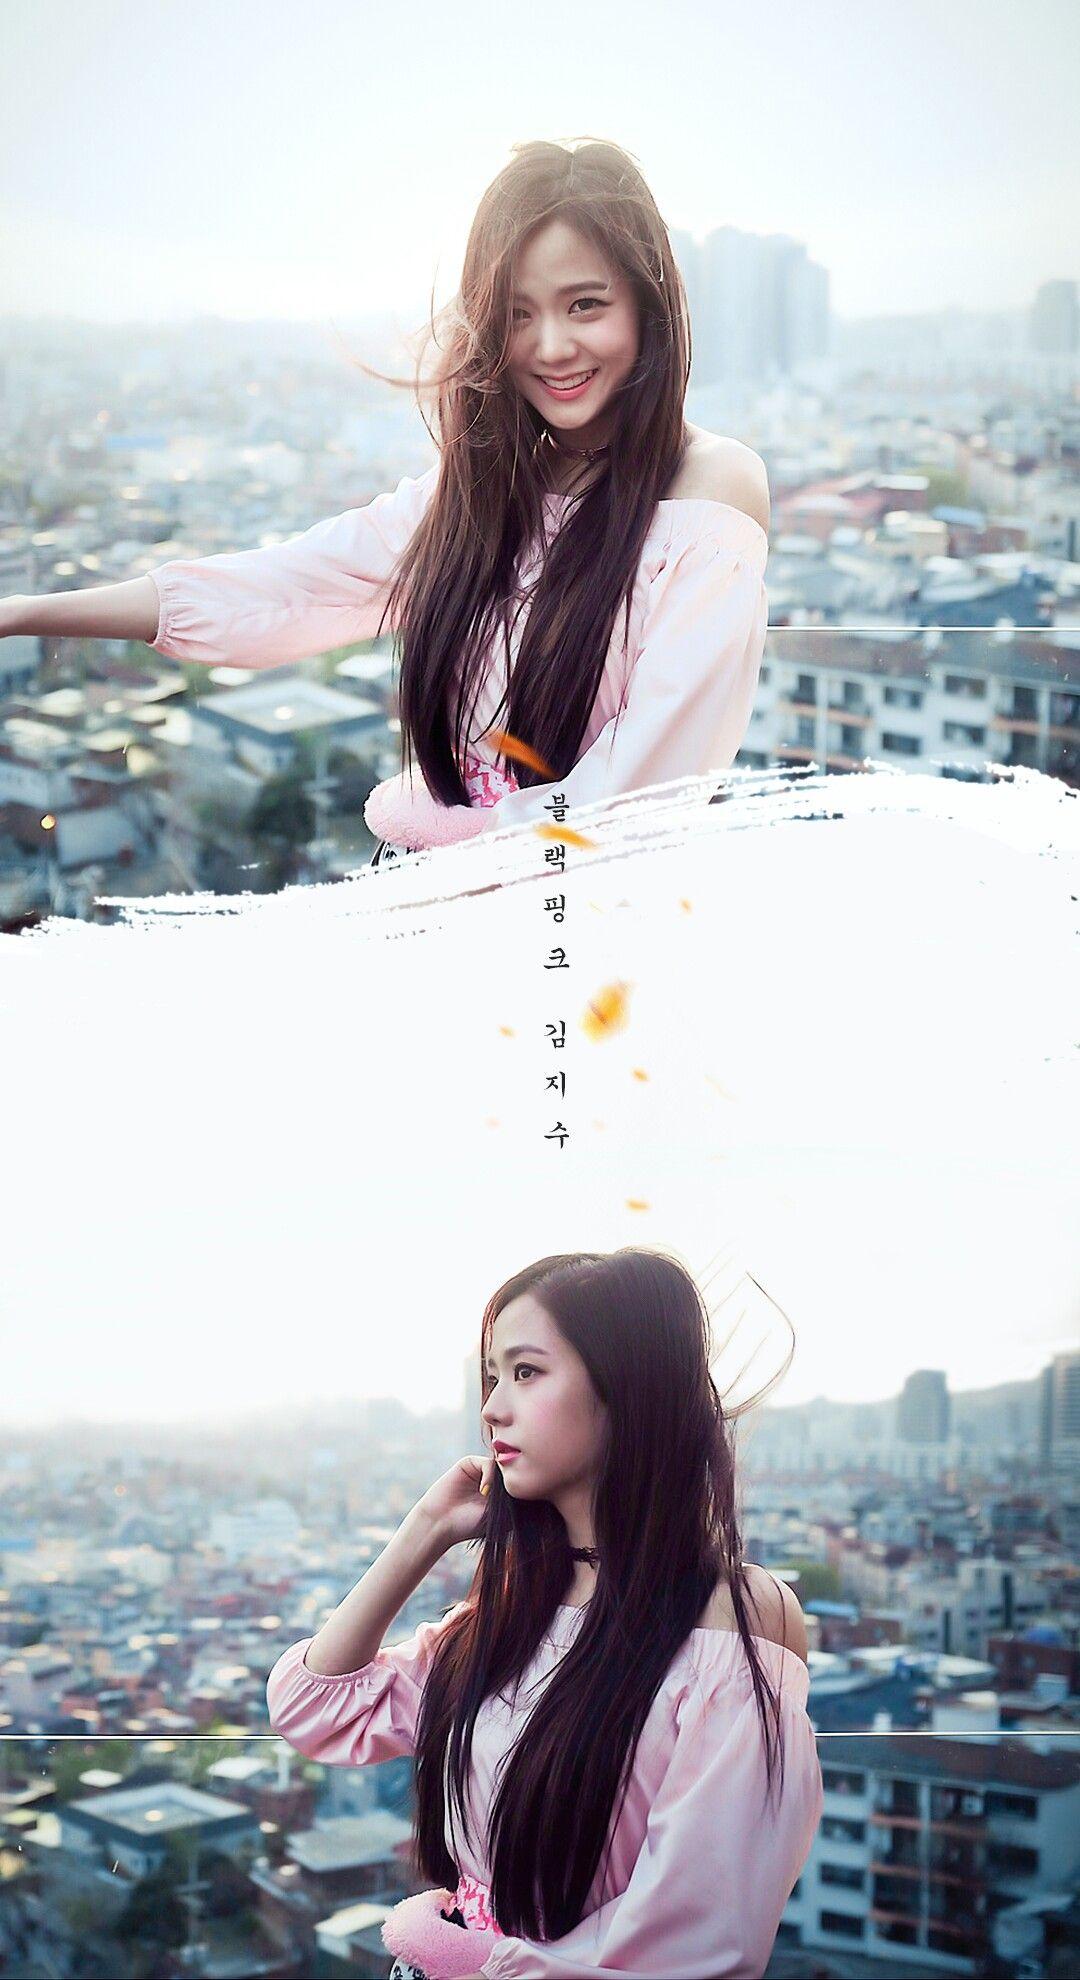 Jisoo Blackpink Wallpaper Lockscreen. Gambar, Fotografi Remaja, Gadis Korea